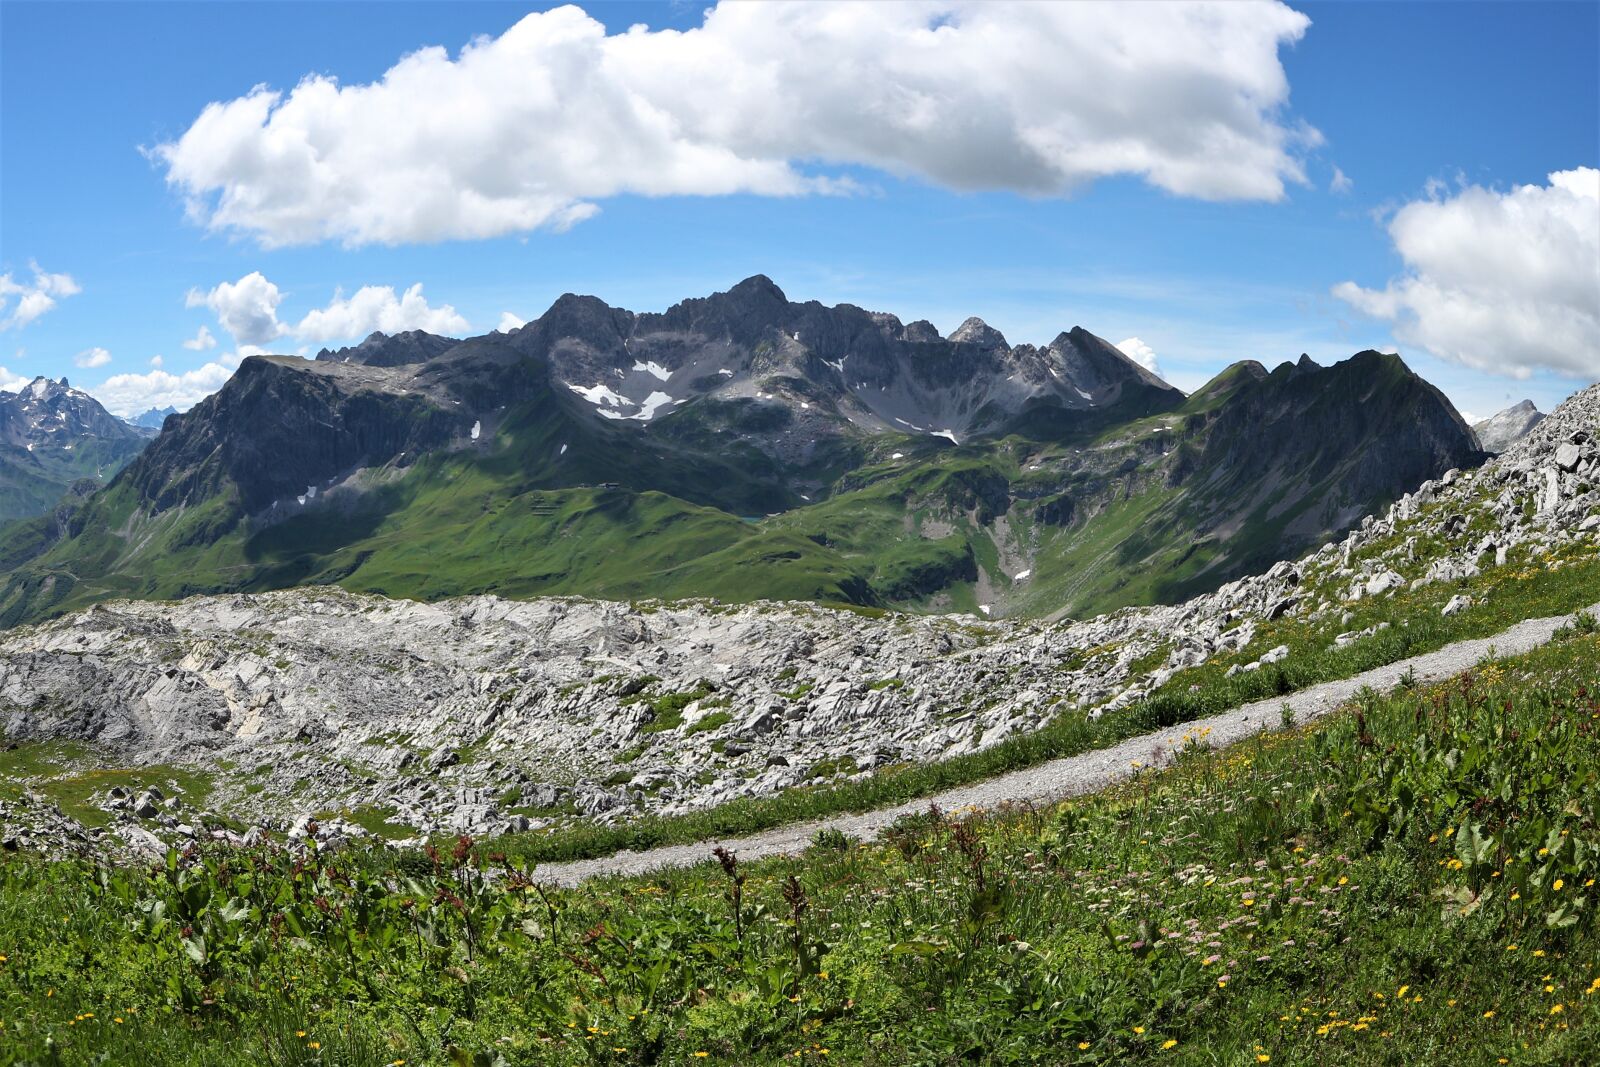 Canon EOS M10 sample photo. Mountains, austria, lech valley photography